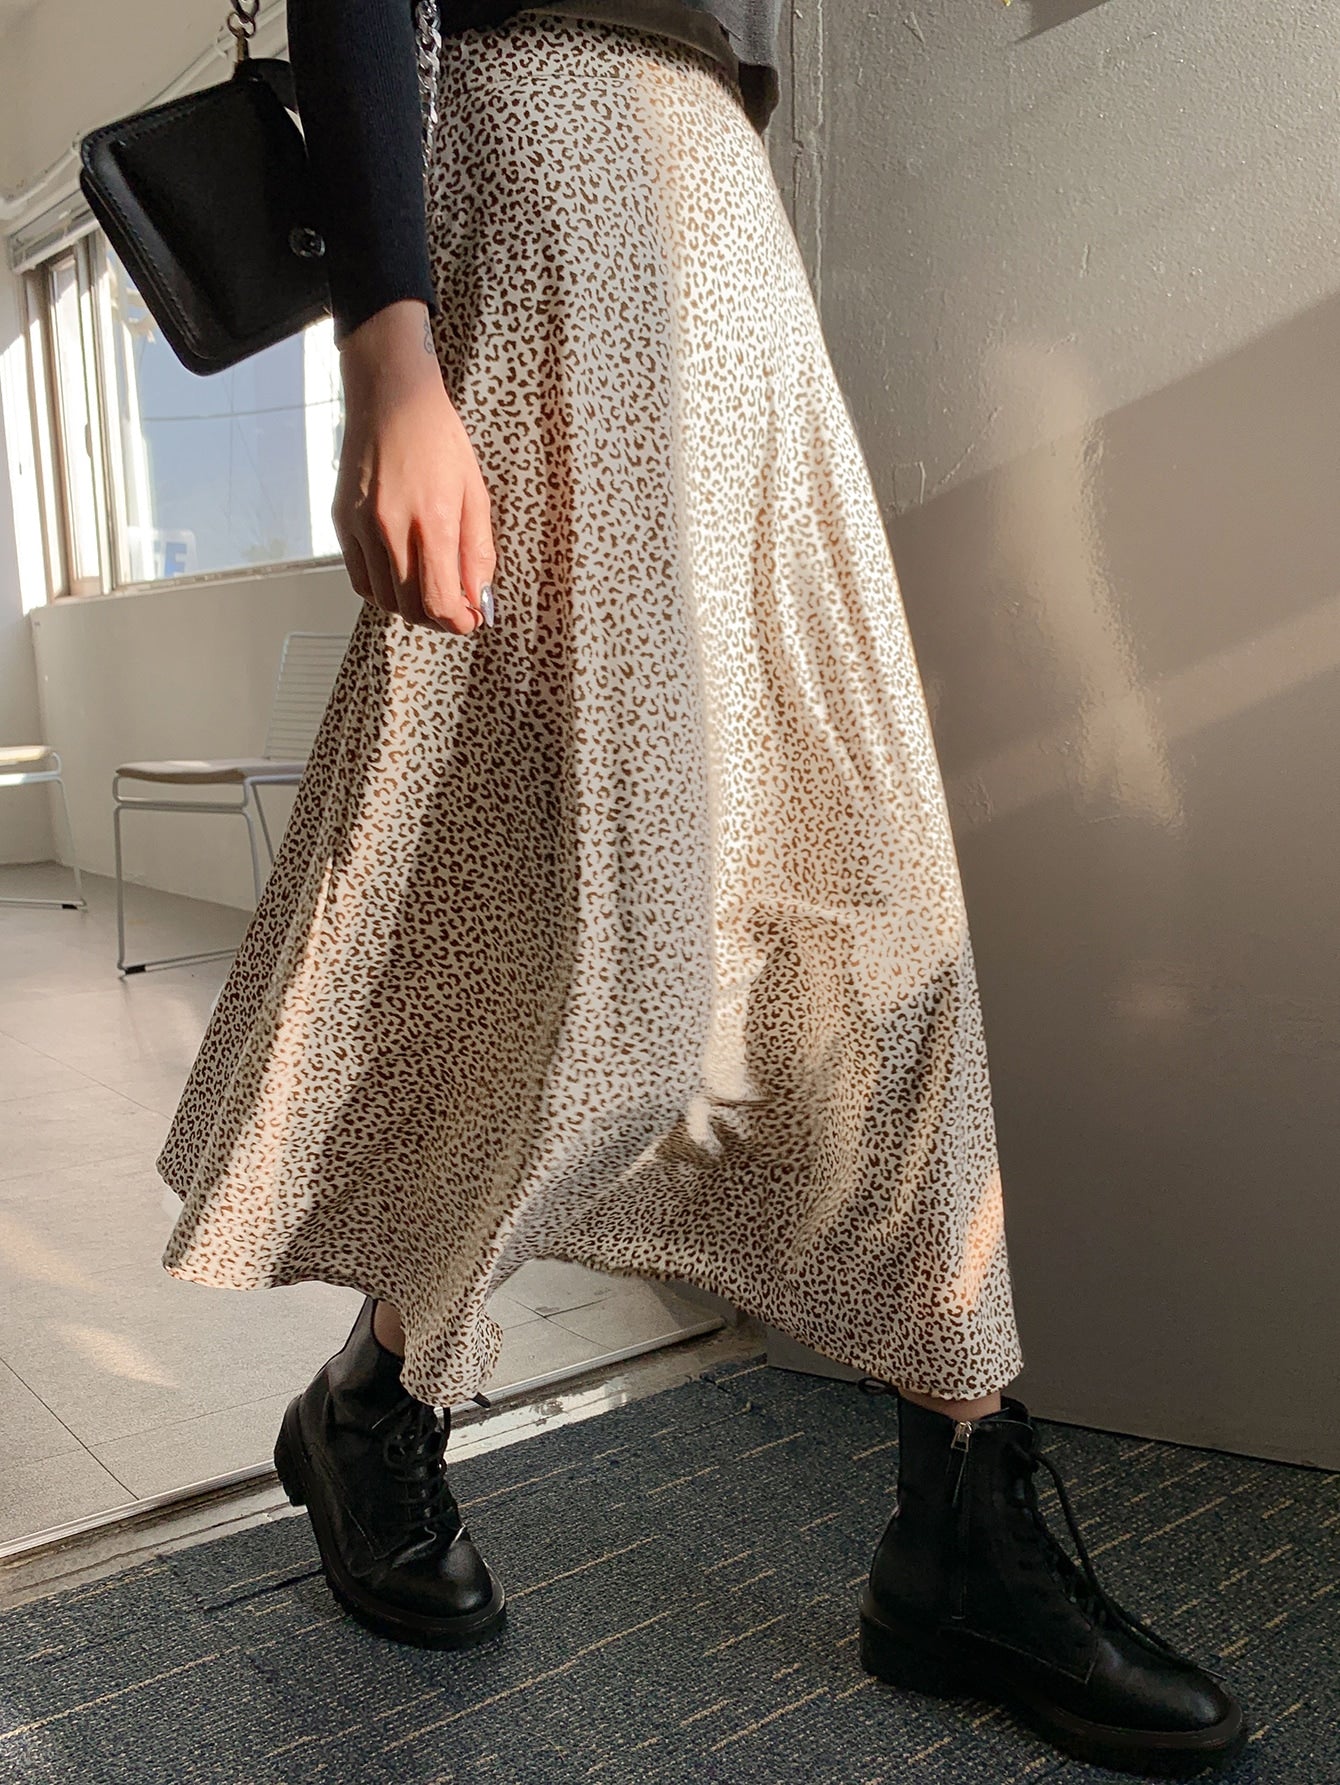 Leopard Print High Waist Skirt